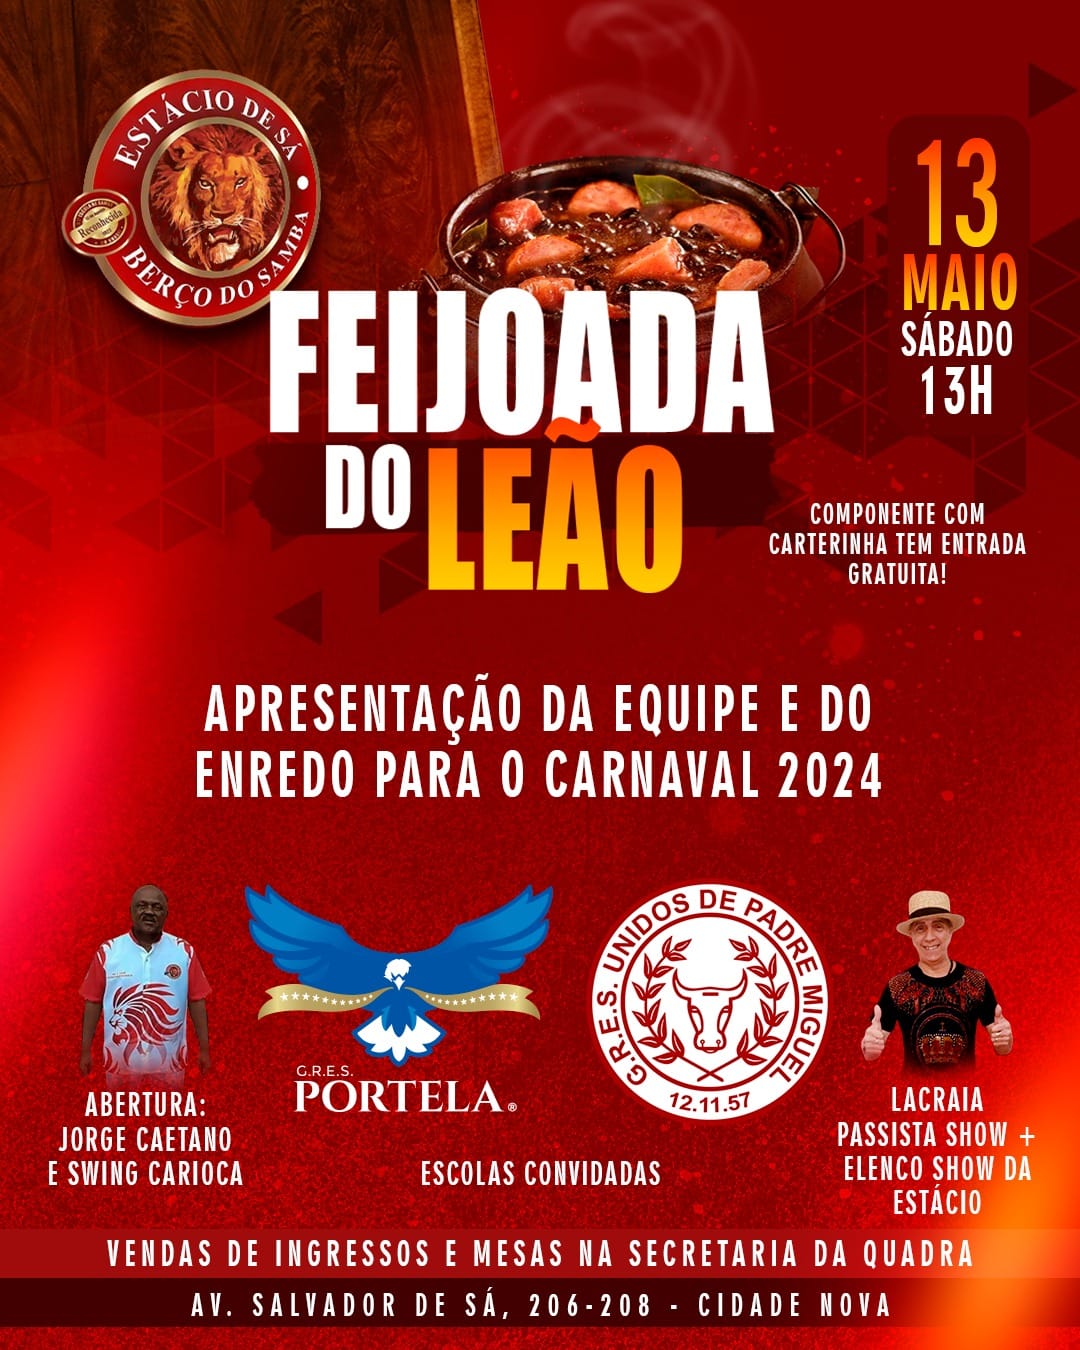 Bateria da Portela será uma das atrações do 1º Fest Rio Judaico - G.R.E.S.  Portela